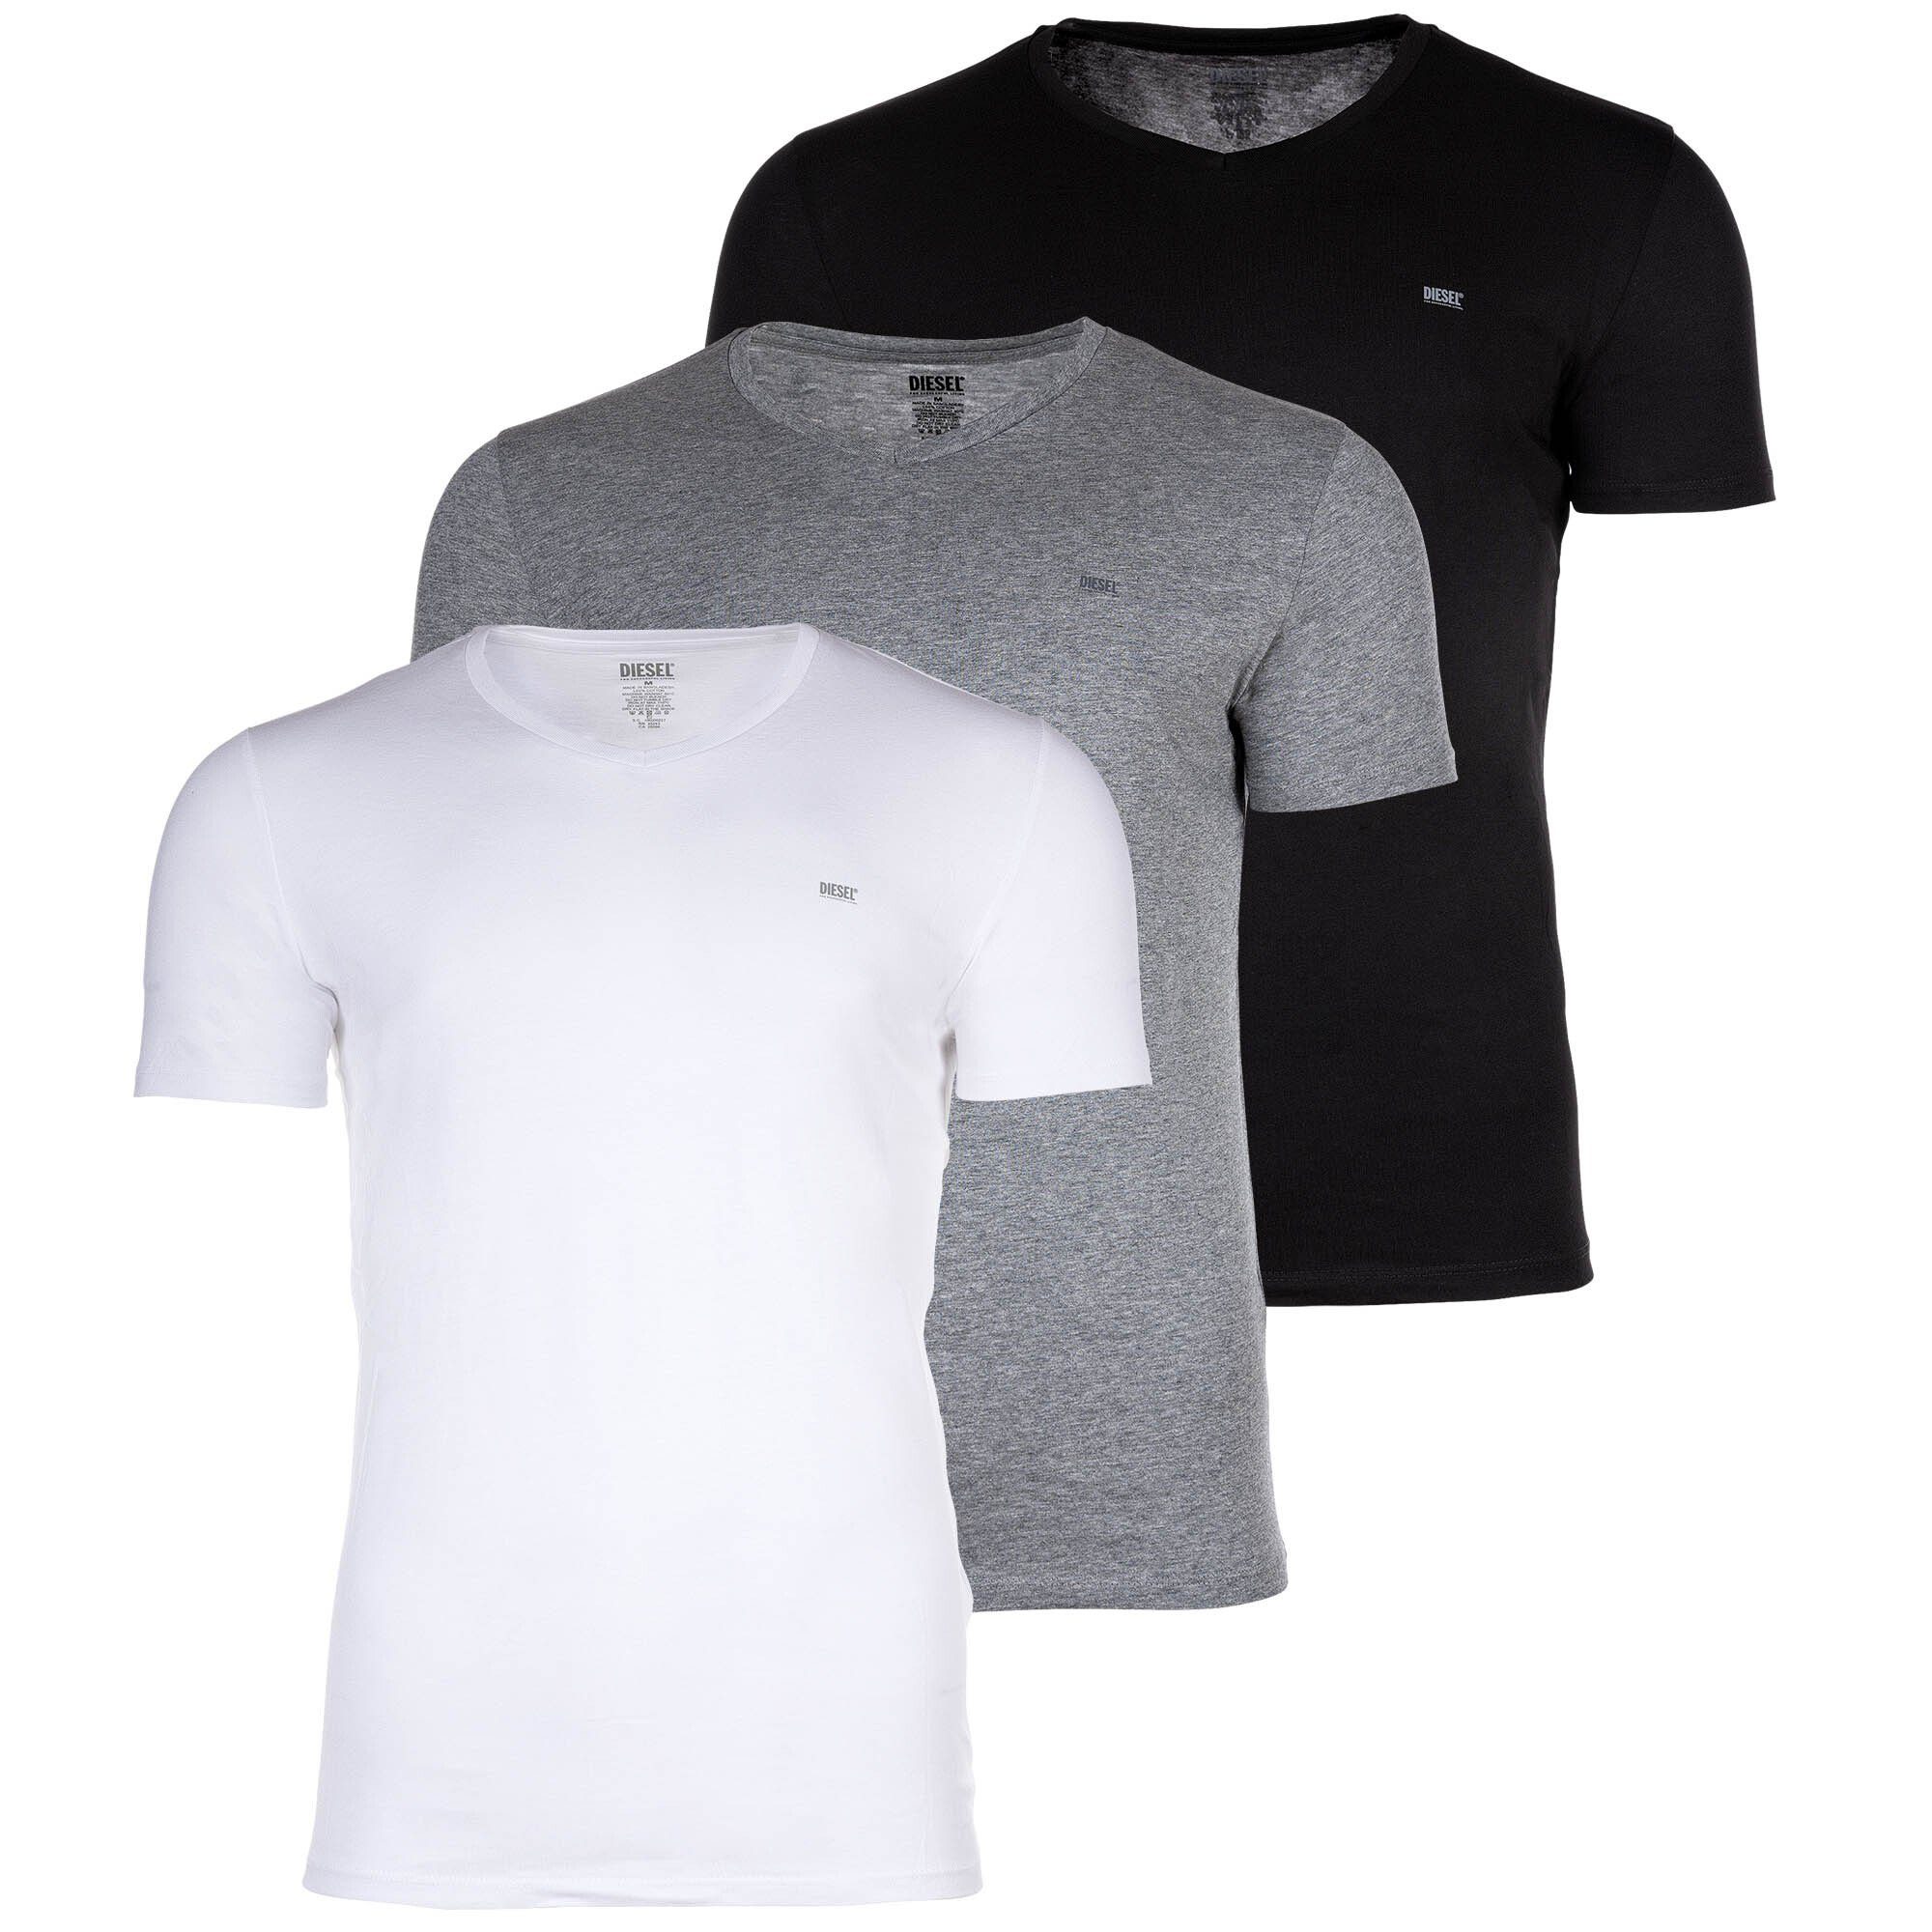 Diesel T-Shirt Herren T-Shirt, 3er Pack - Schwarz/Grau/Weiß